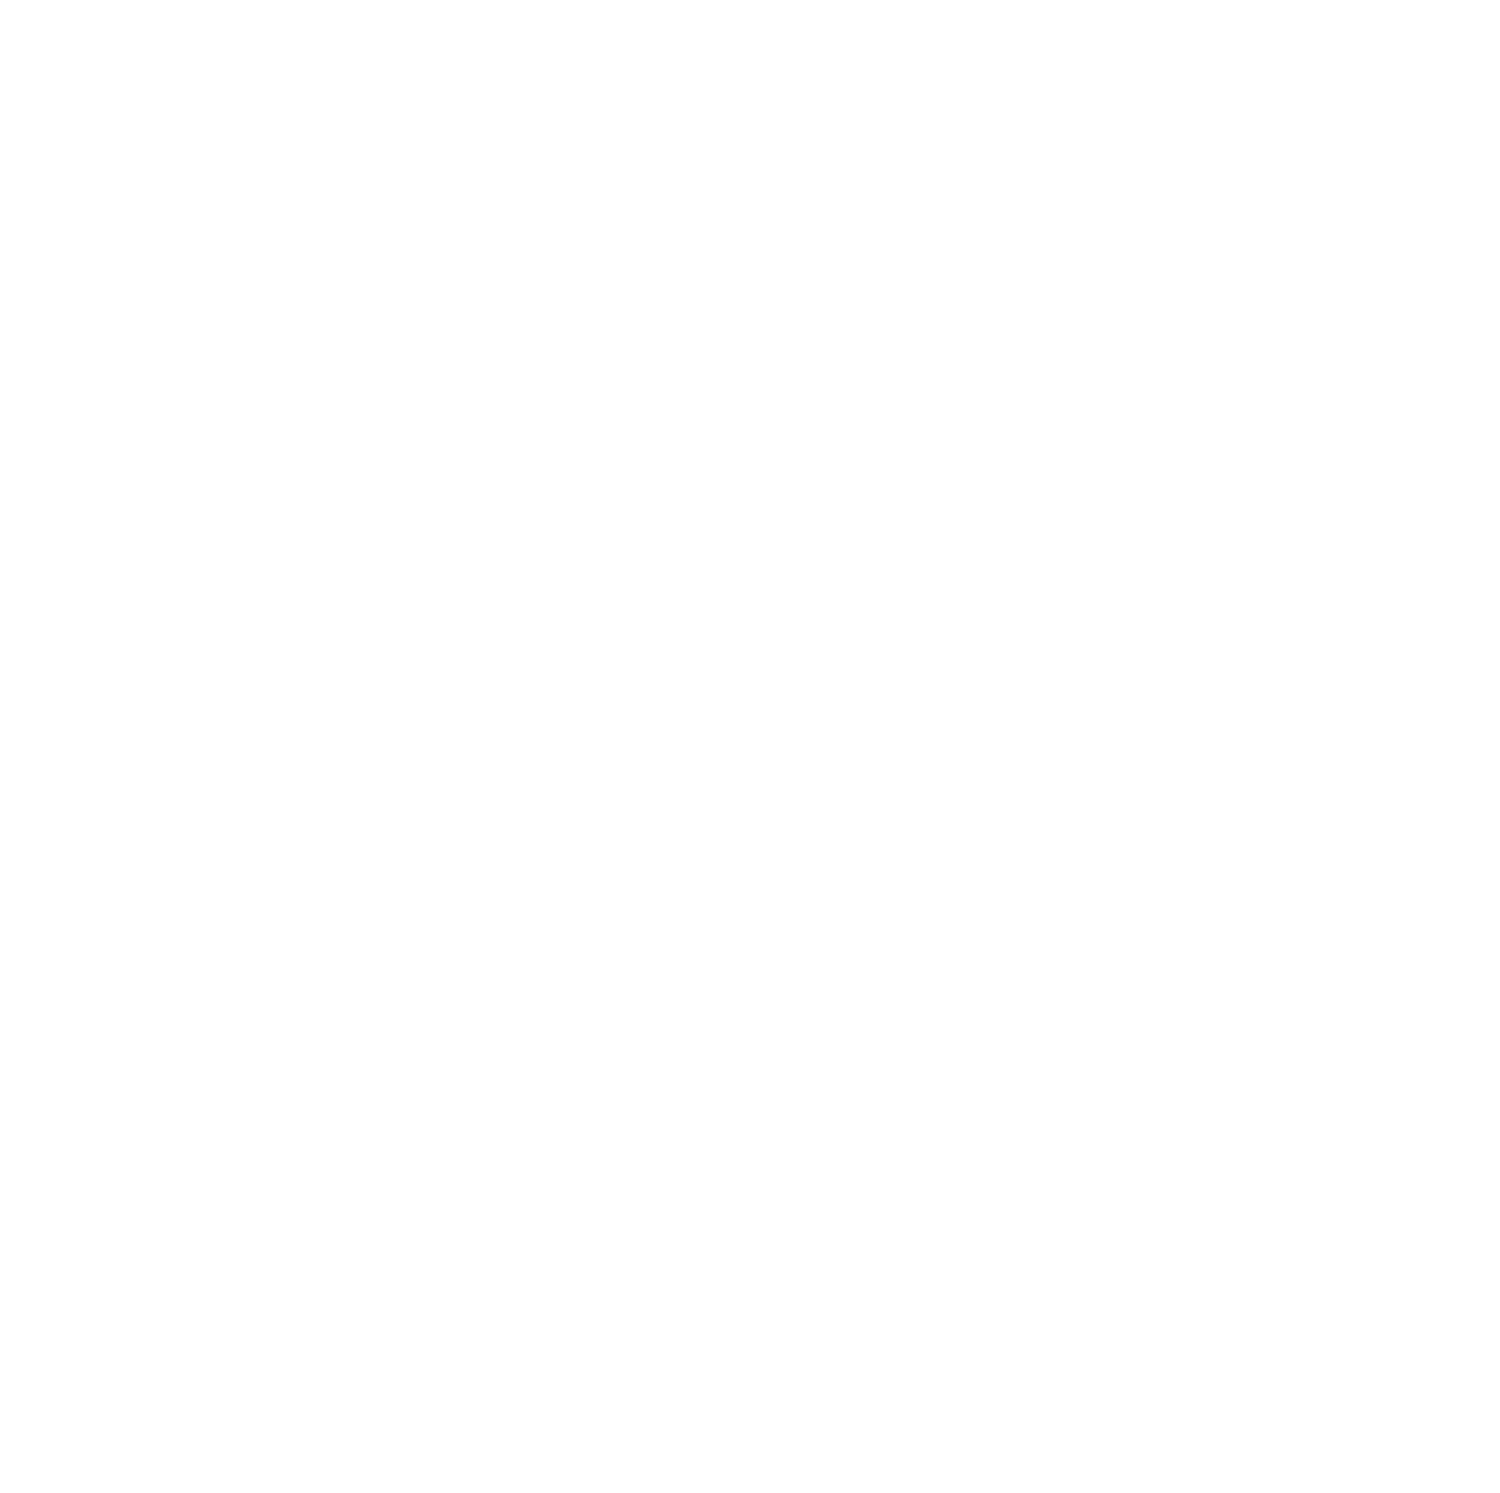 YWAM Detroit